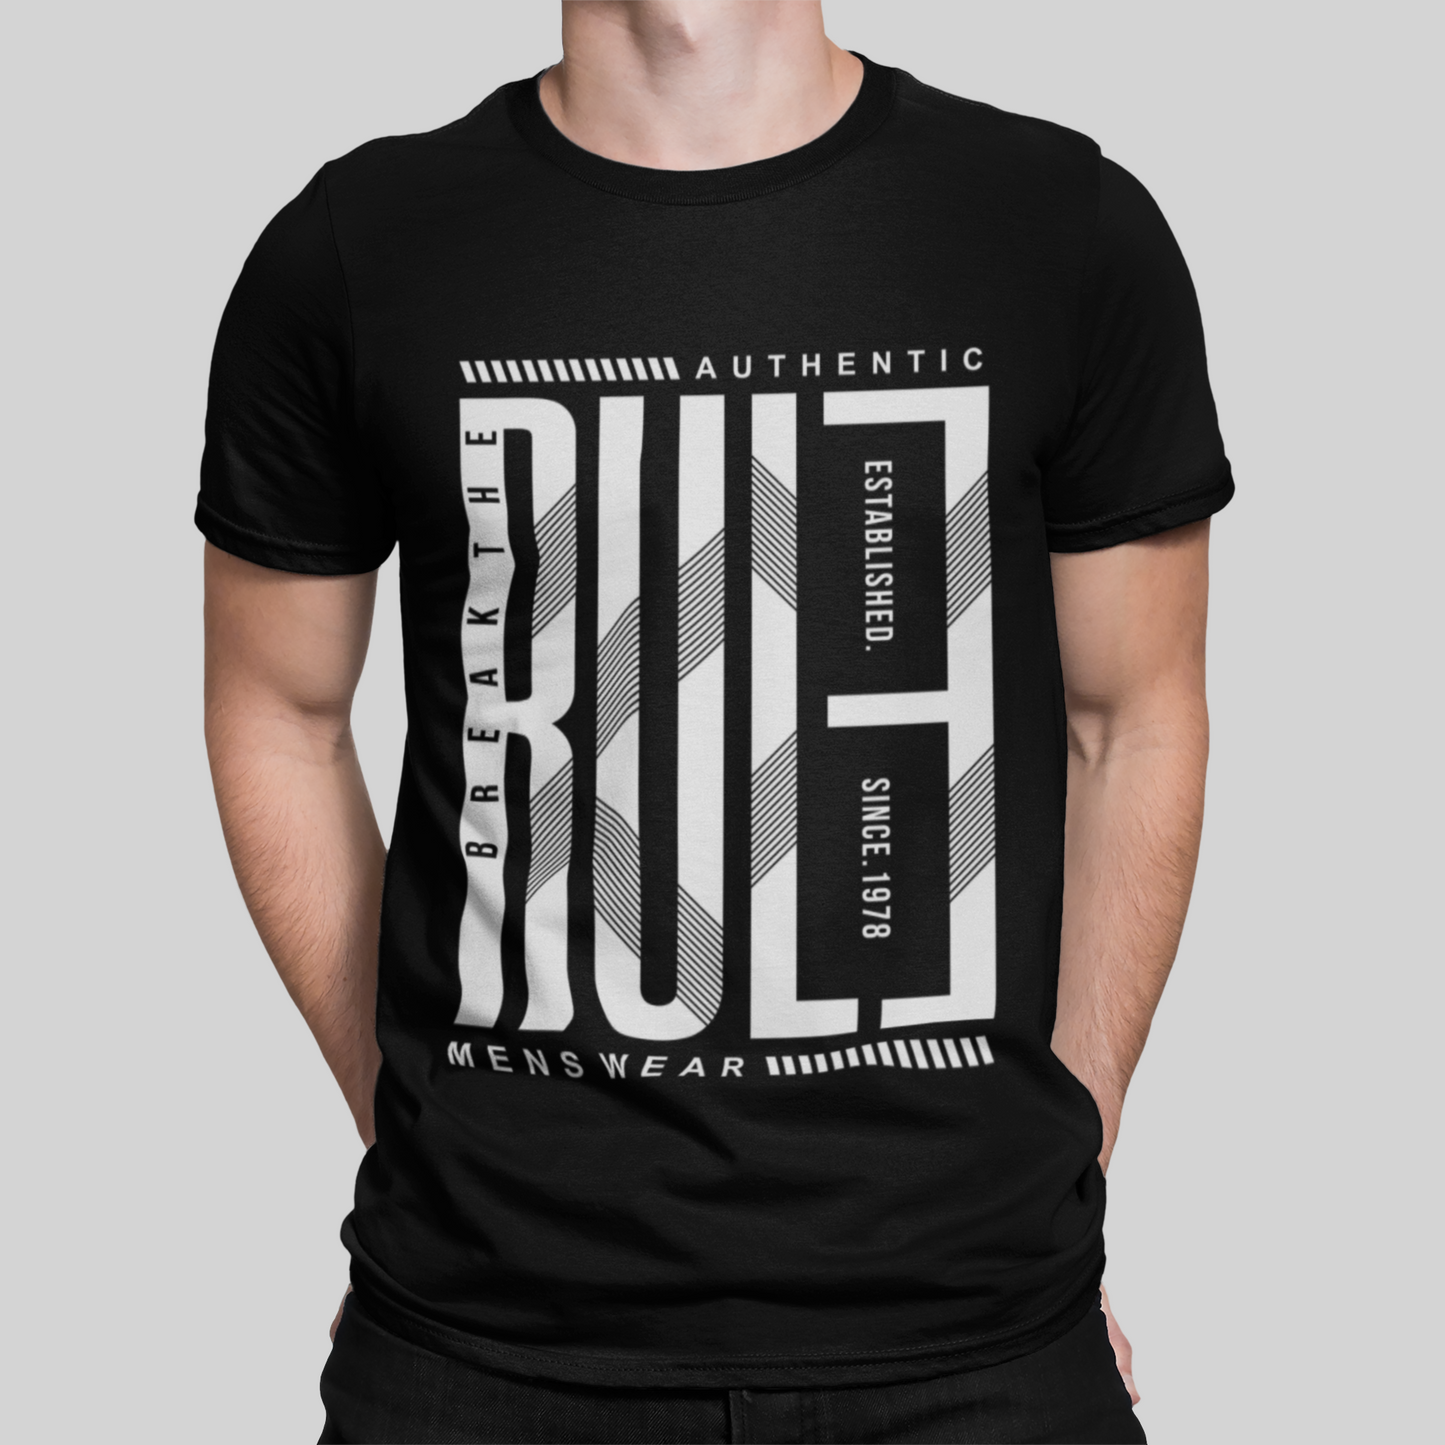 Break The Rule Black T-Shirt For Men